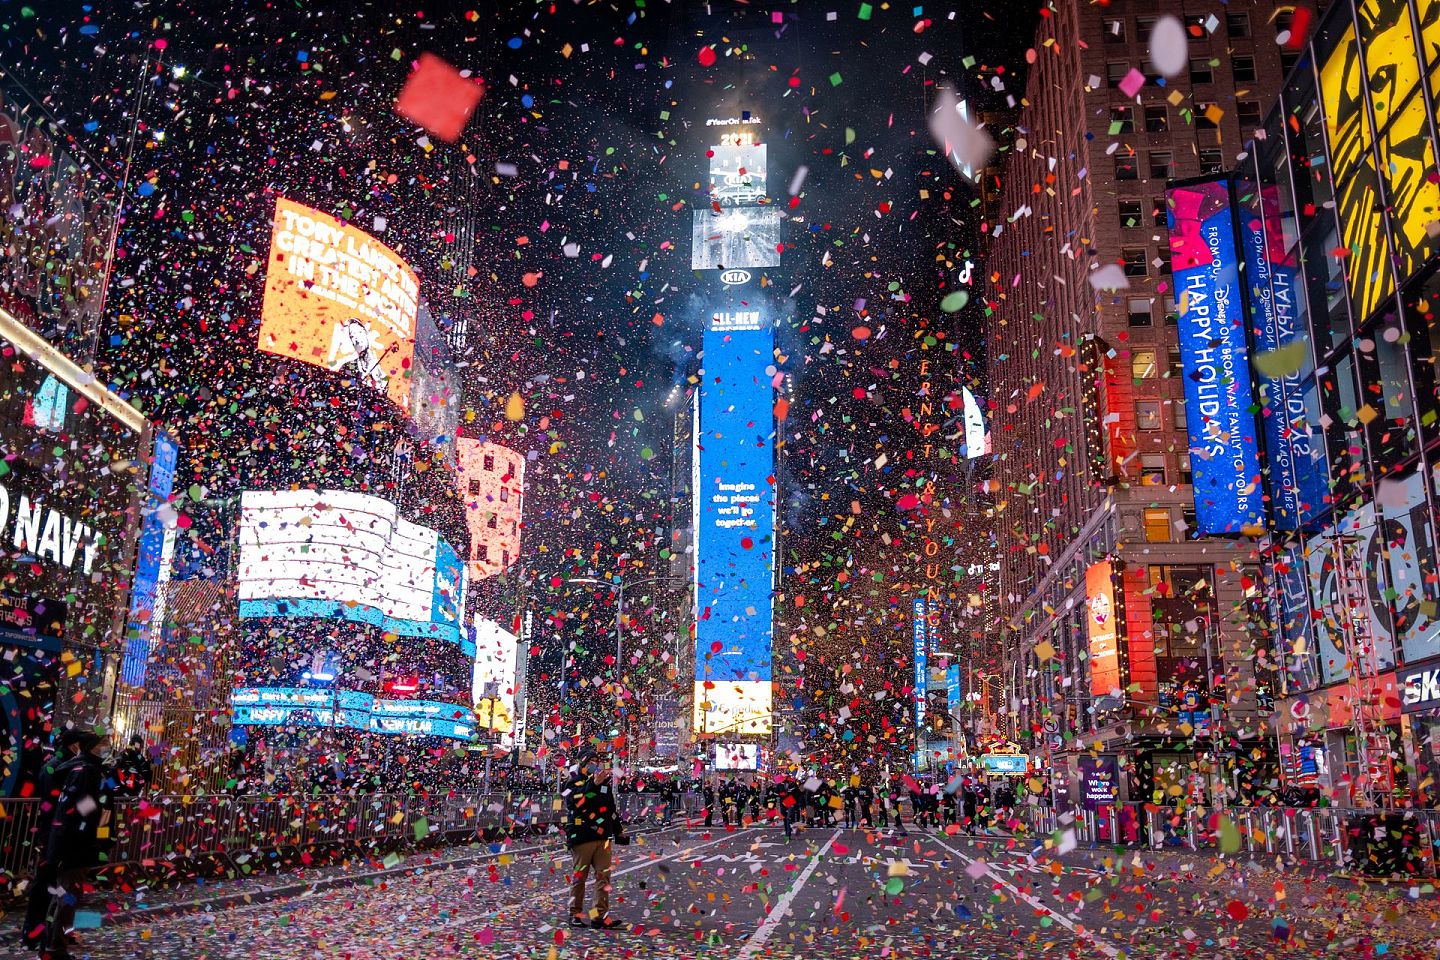 2021年1月1日，跨年之夜的水晶球降落在冷冷清清的美国纽约时代广场。由于疫情严峻，在往年跨年夜通常挤满狂欢者的这个区域仍处于封闭状态。（AP）